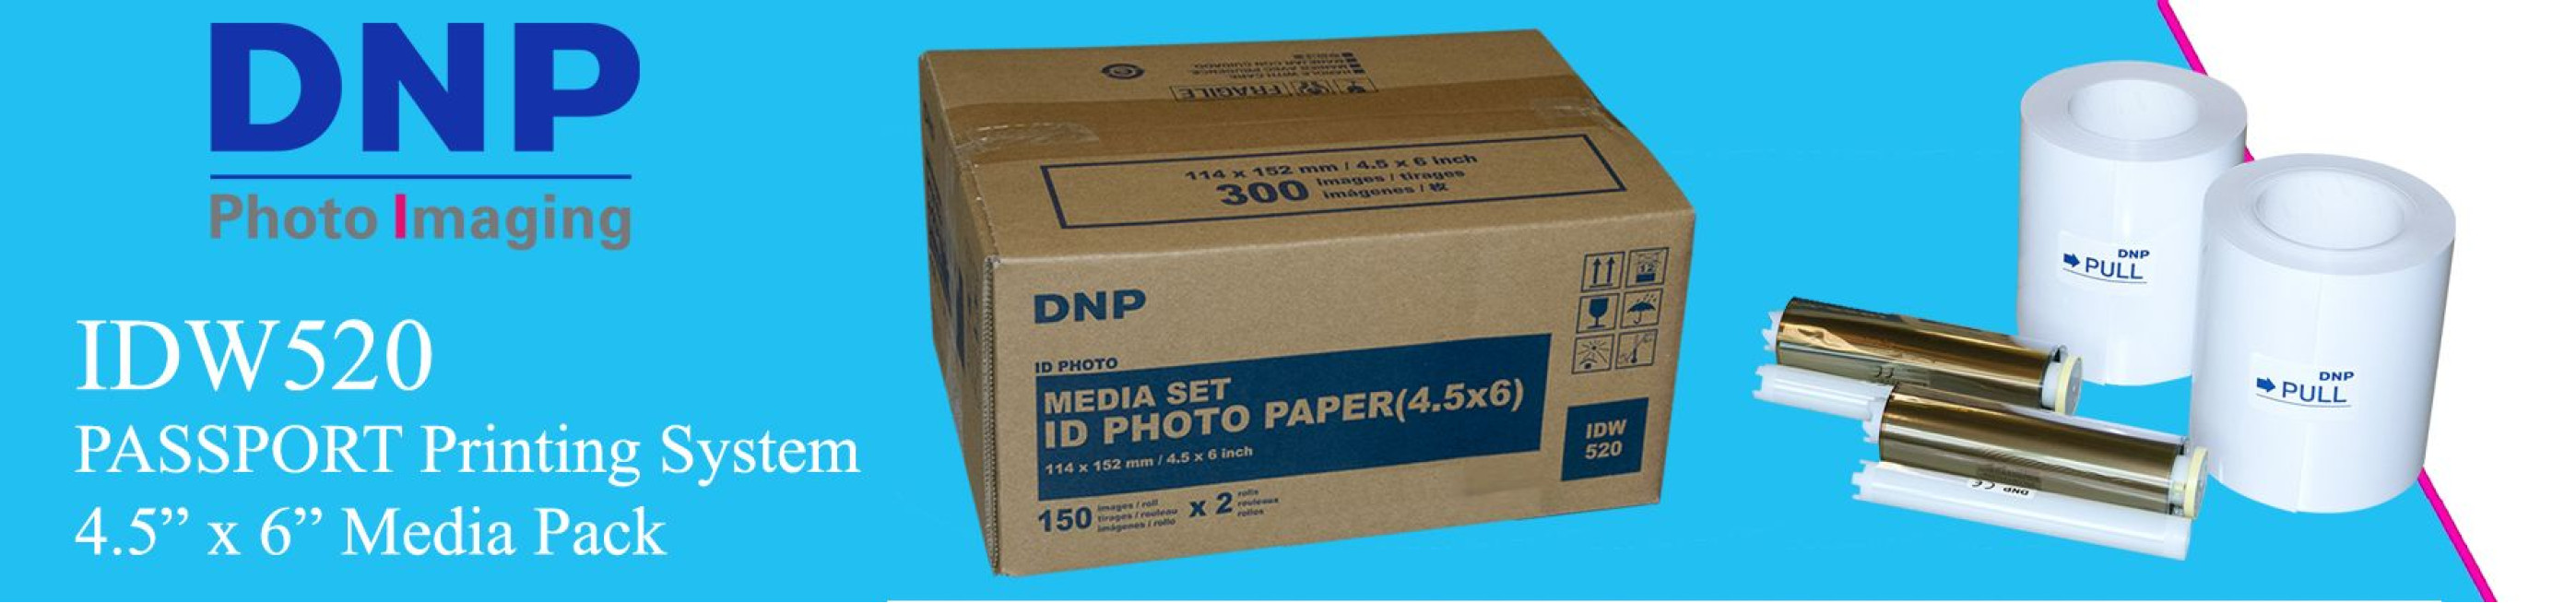 IDW520 4.5" x 6" Media Pack